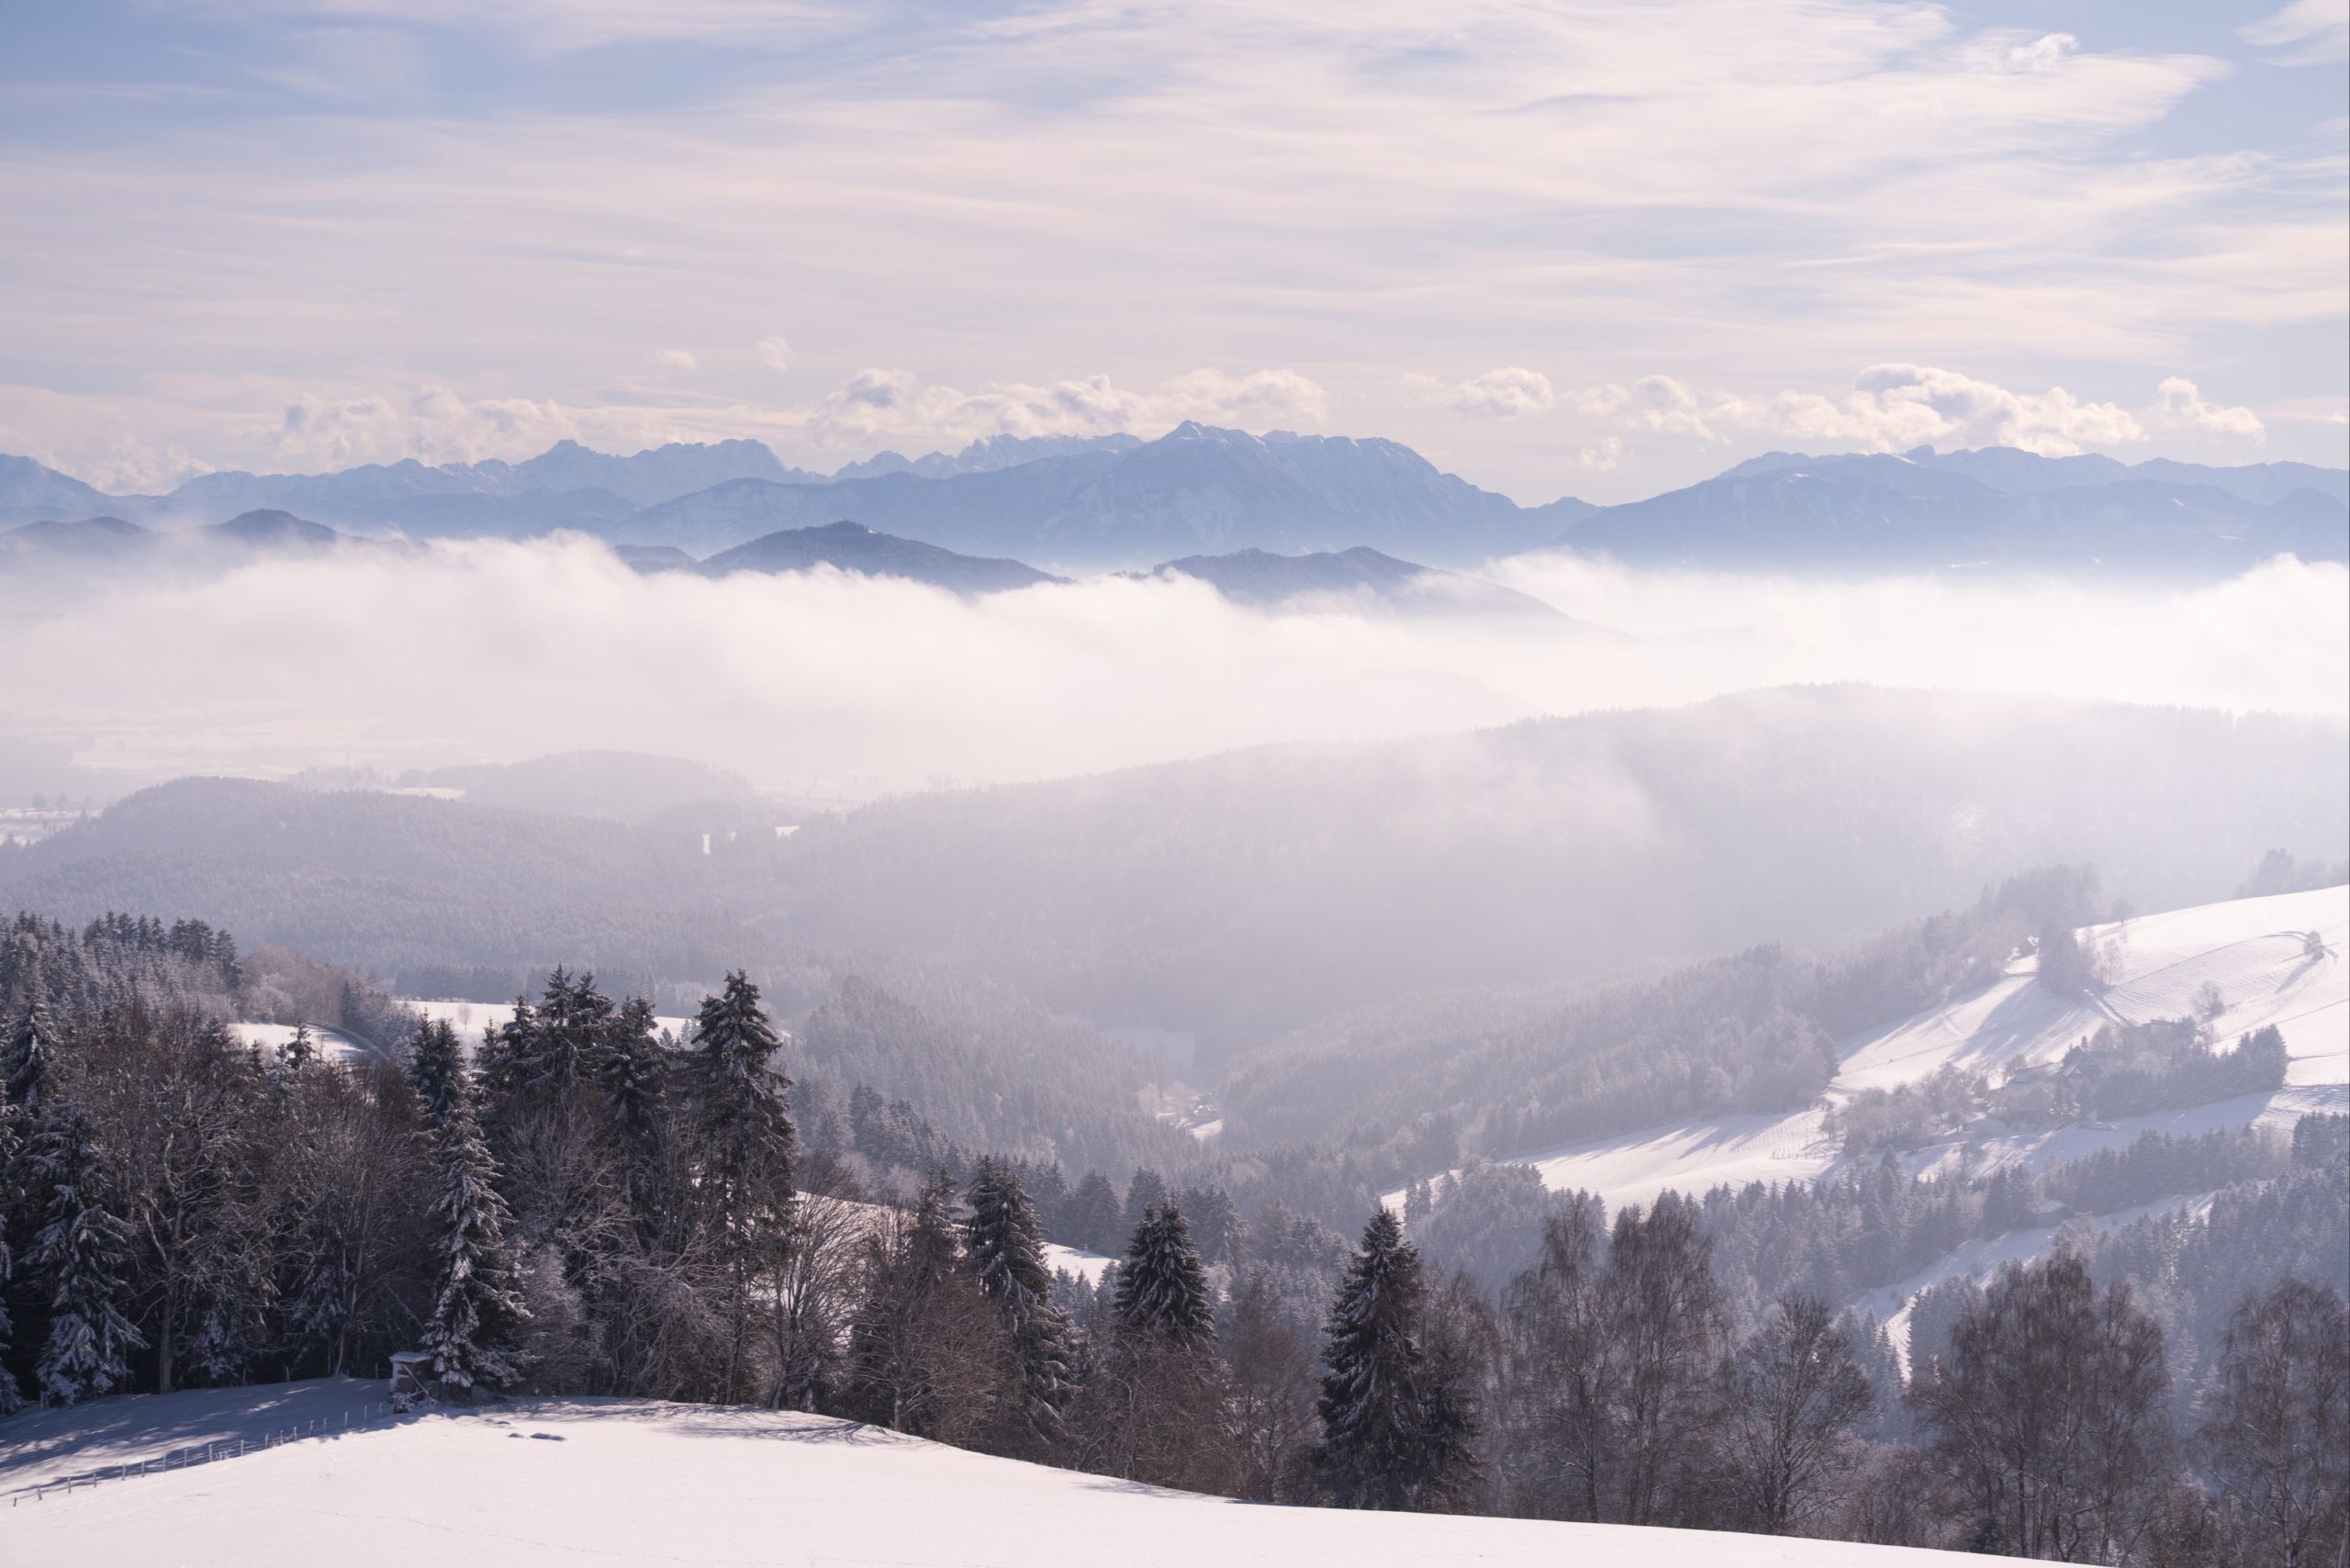 Snowy view over the Karawanken mountains from Gunzenberg